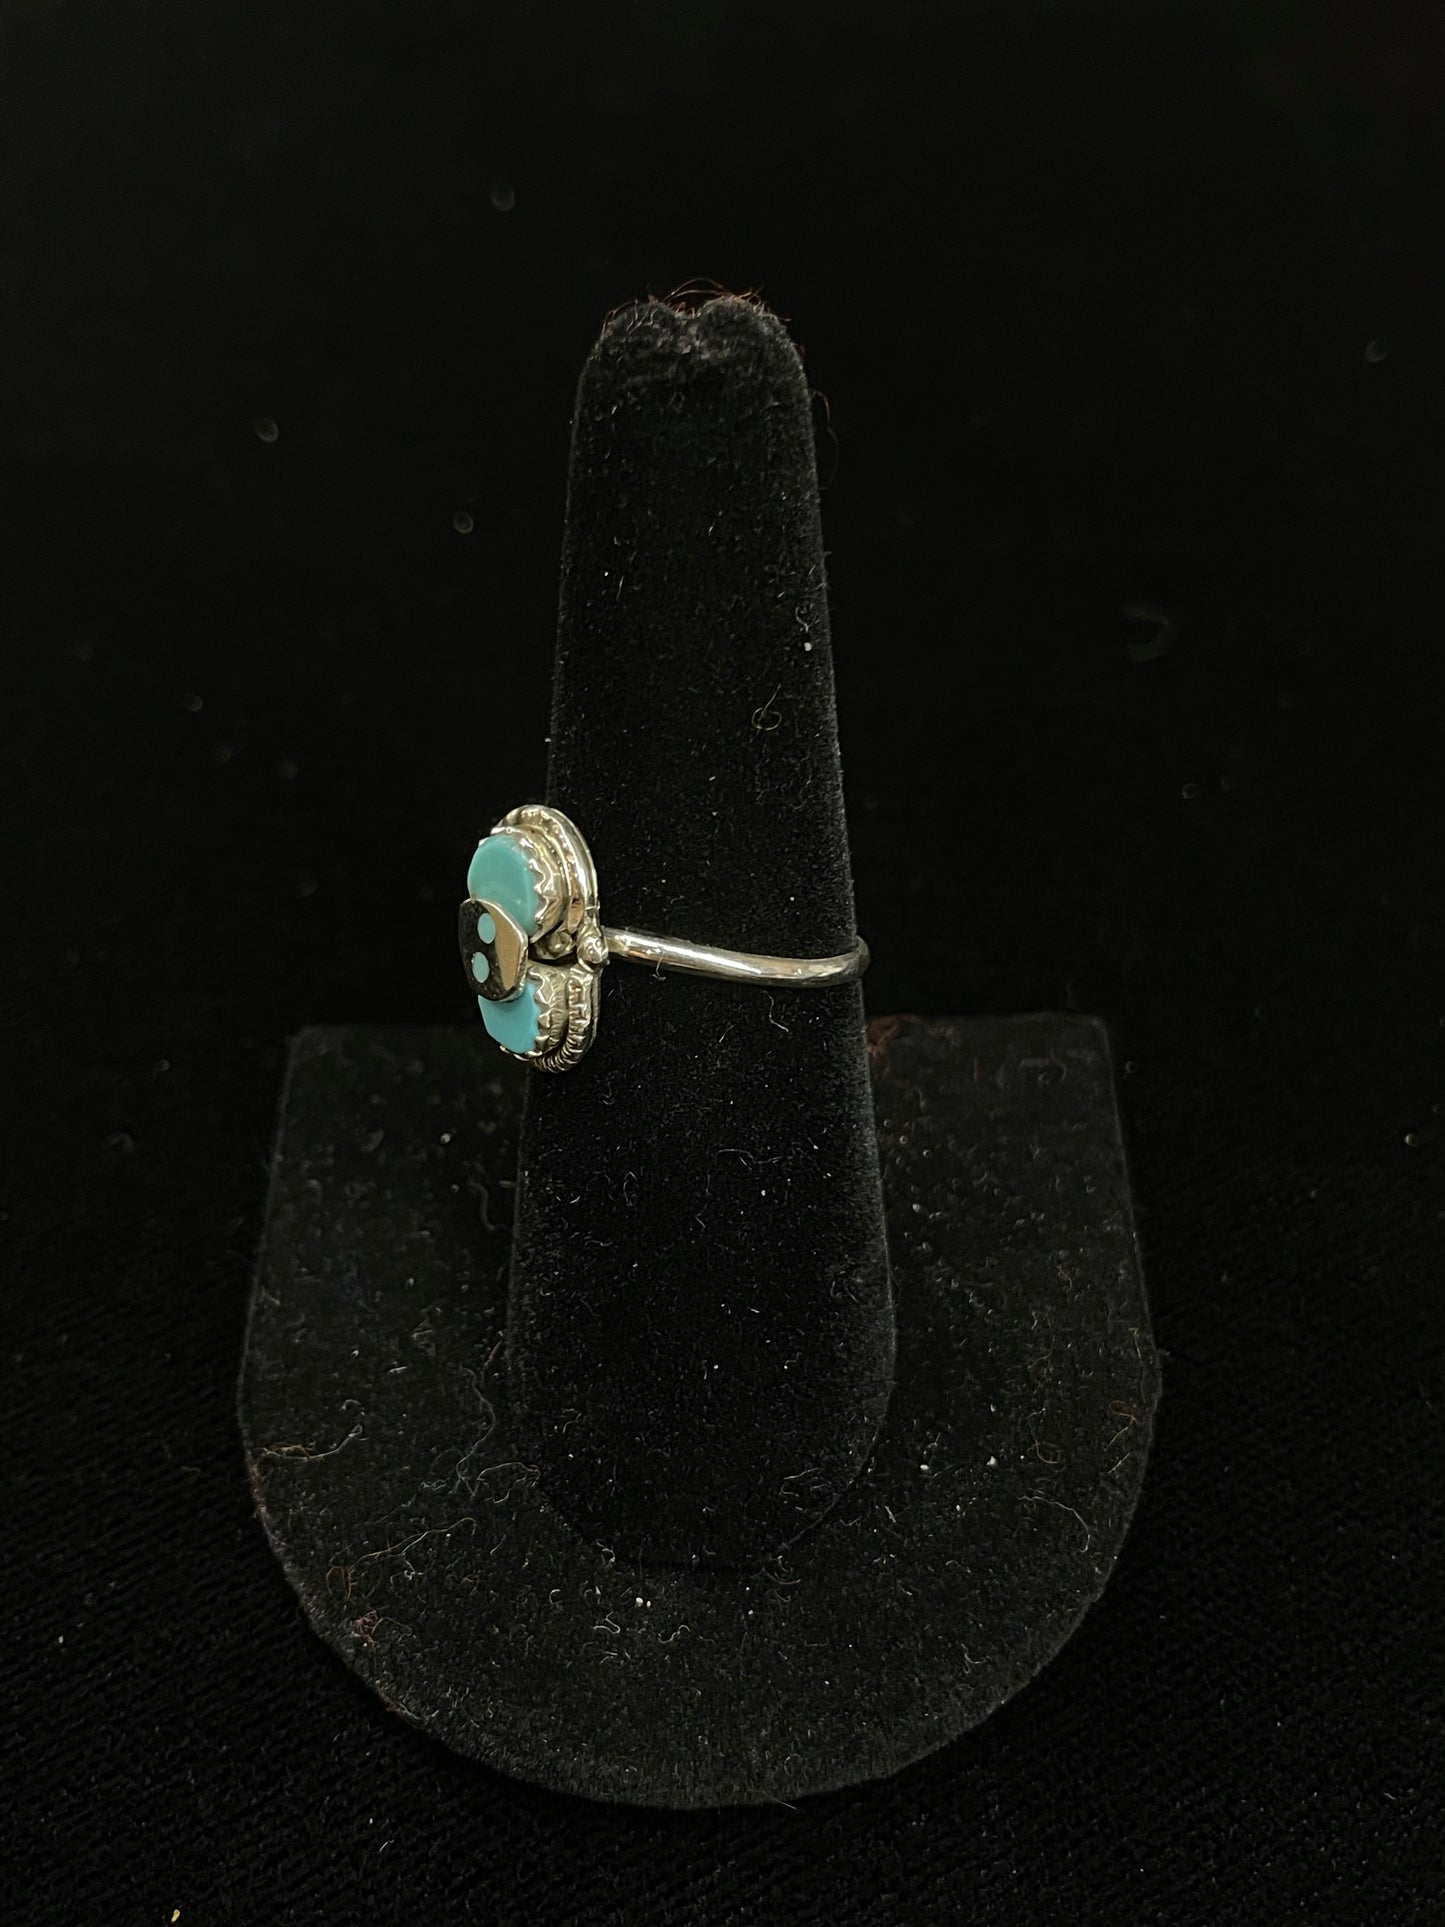 2 Stone Turquoise Ring by Joy Calavaza, Zuni